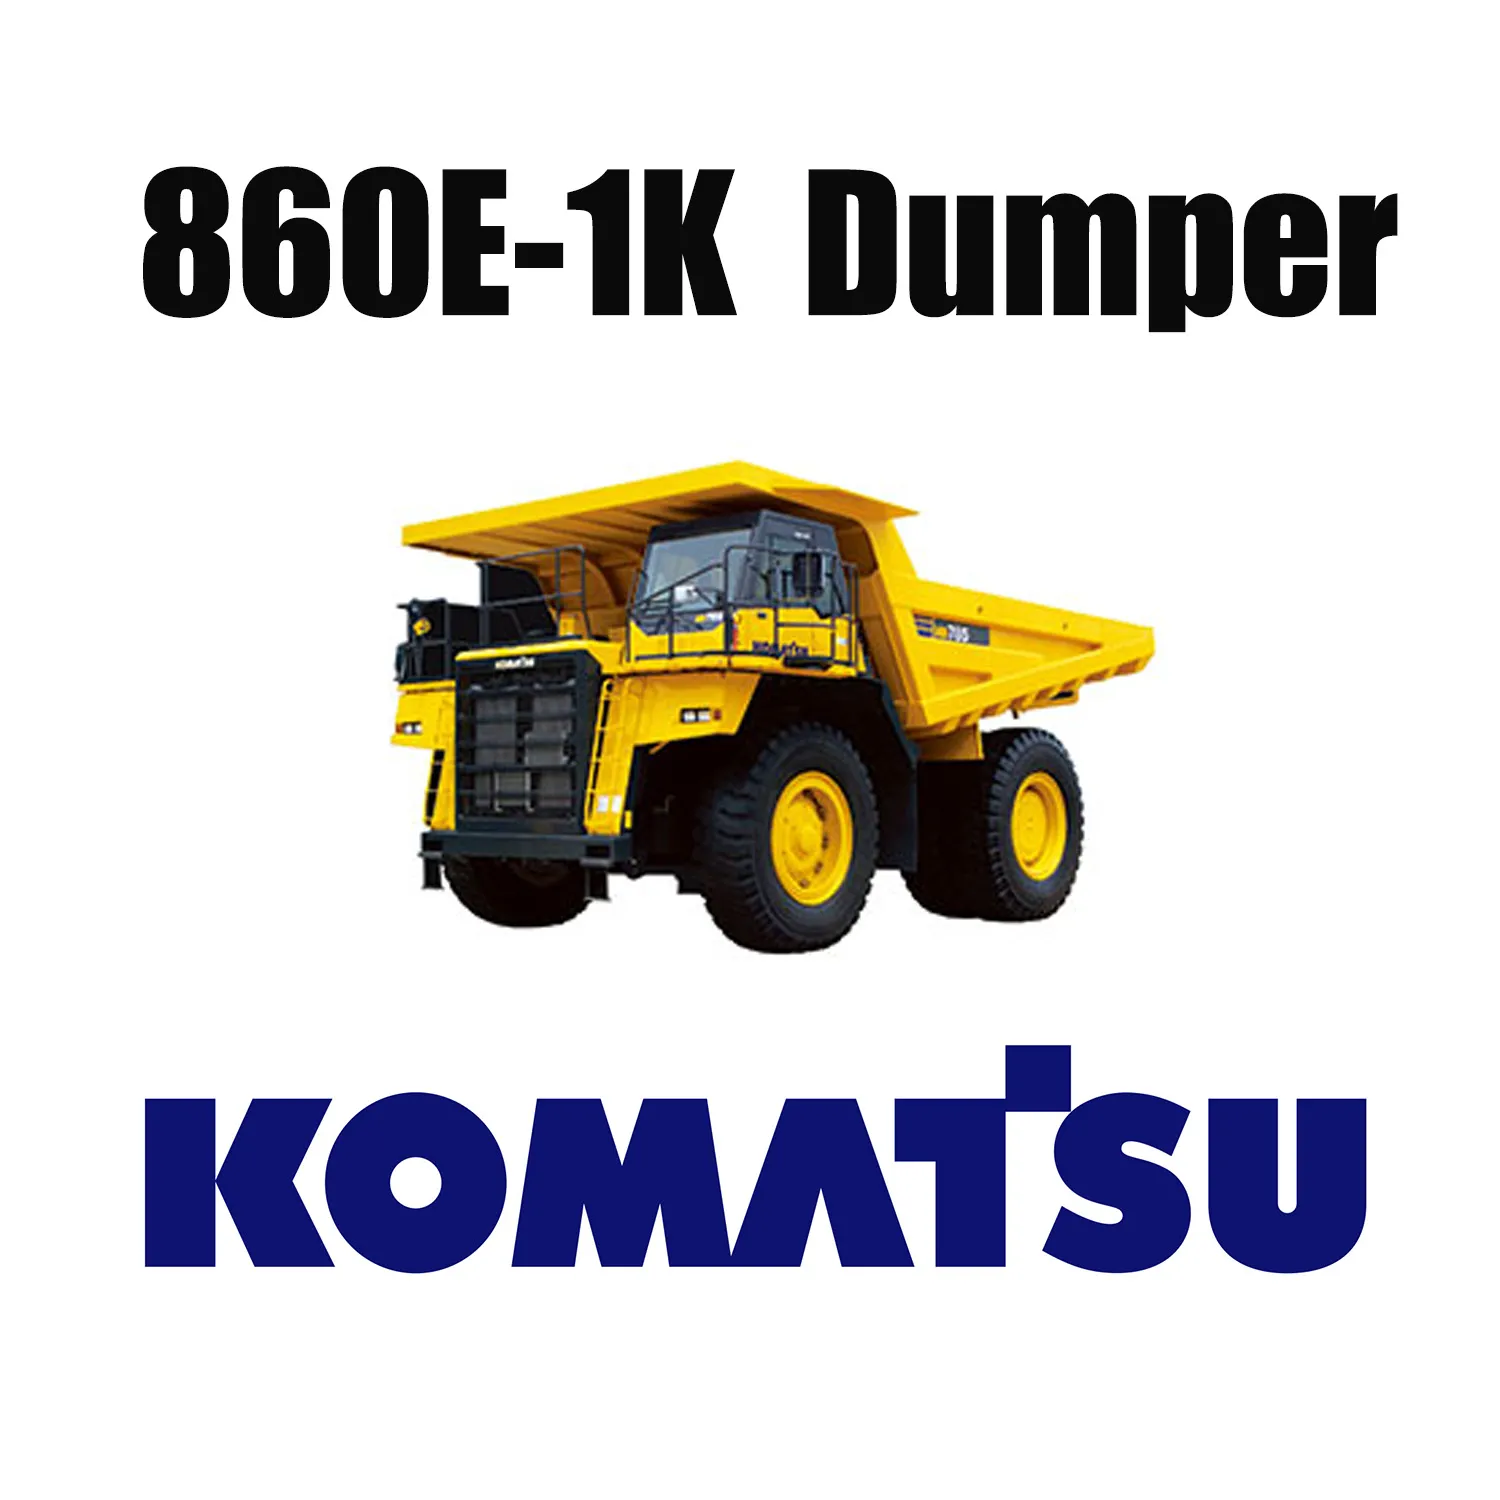 Giant 50/80R57 Off-the-Road-Reifen für den KOMATSU 860E-1K in der Kohlemine